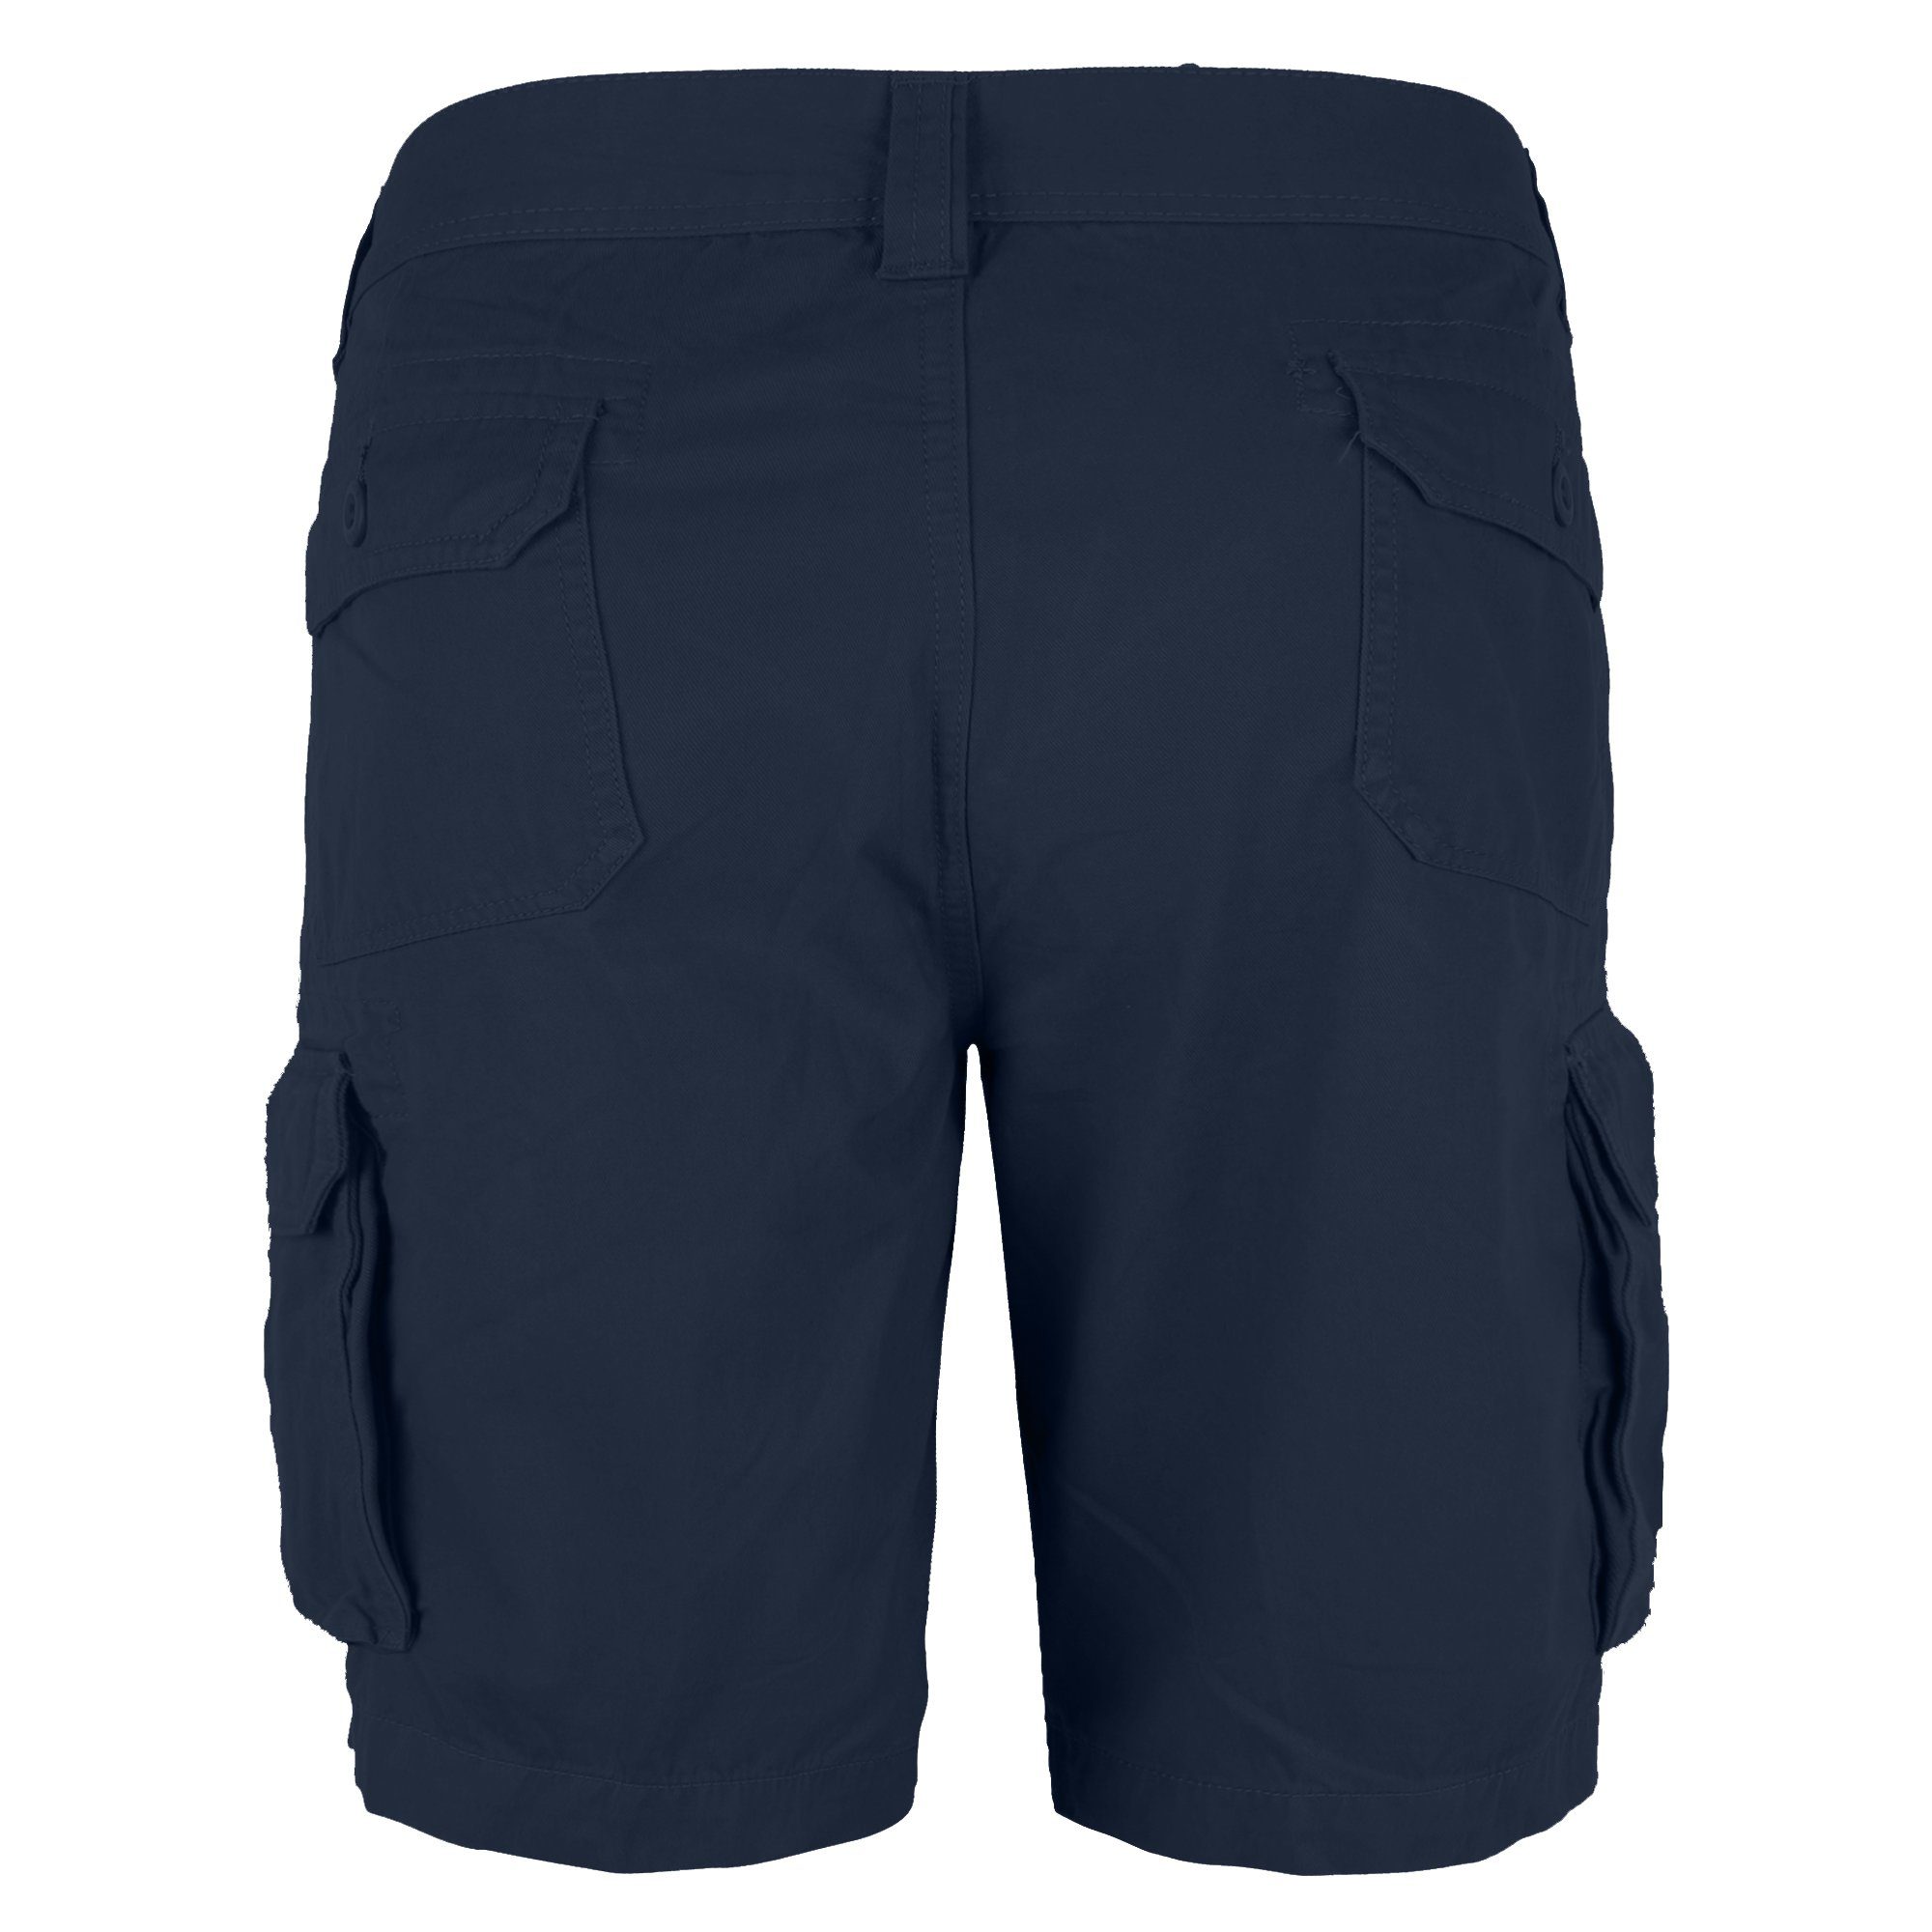 BlauerHafen Cargoshorts Herren Cargo Passform Baumwolle Navy Bermuda Normale Shorts Hose 100